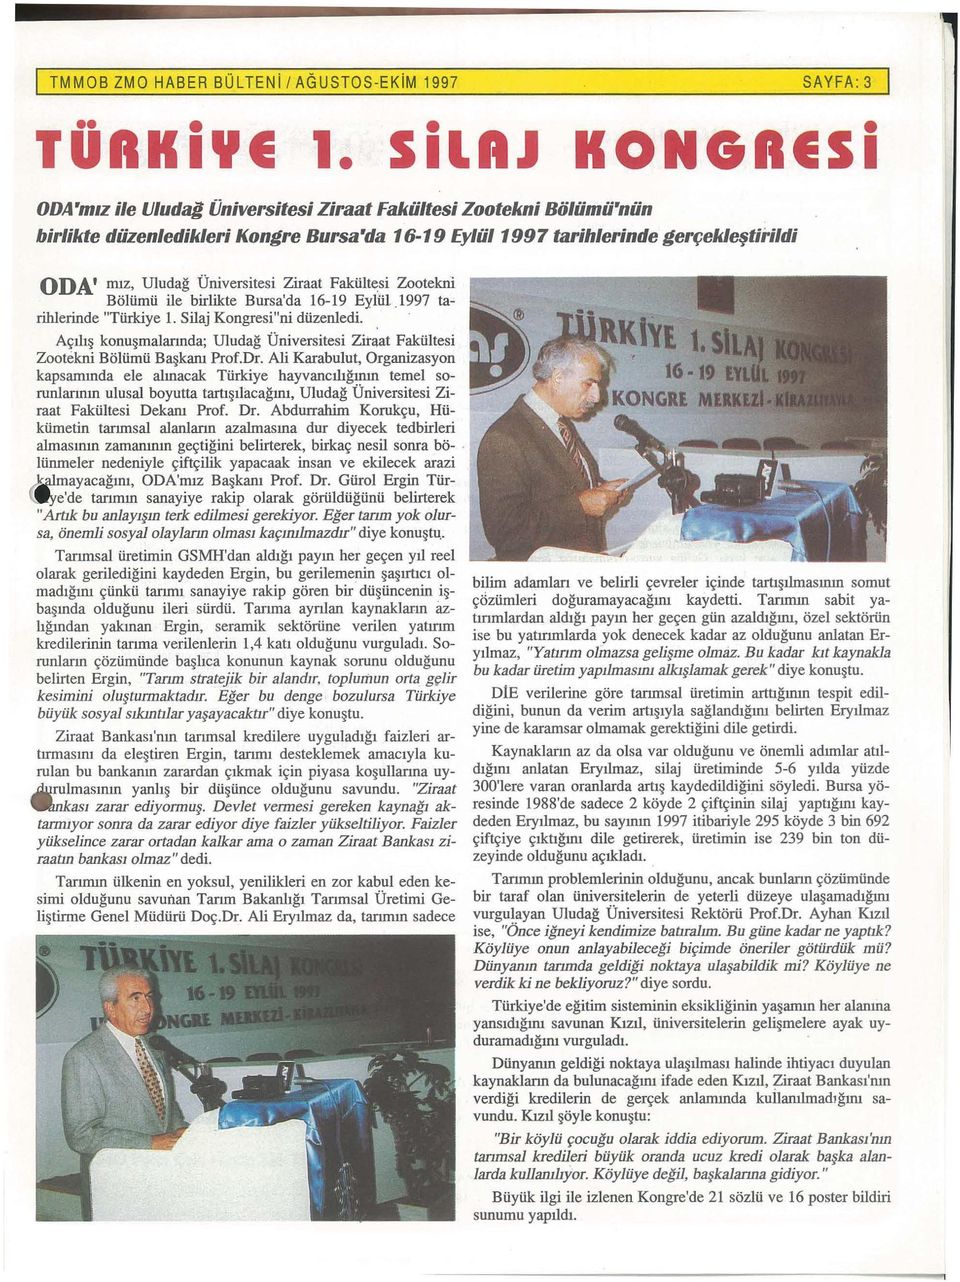 Universitesi Ziraat Fakiilt~si Zootekni Boltimti ile birlikte Bursa'da 16-19 Eyltil.1997 tarihlerinde "Ttirkiye 1. Silaj Kongresi"ni diizenledi.